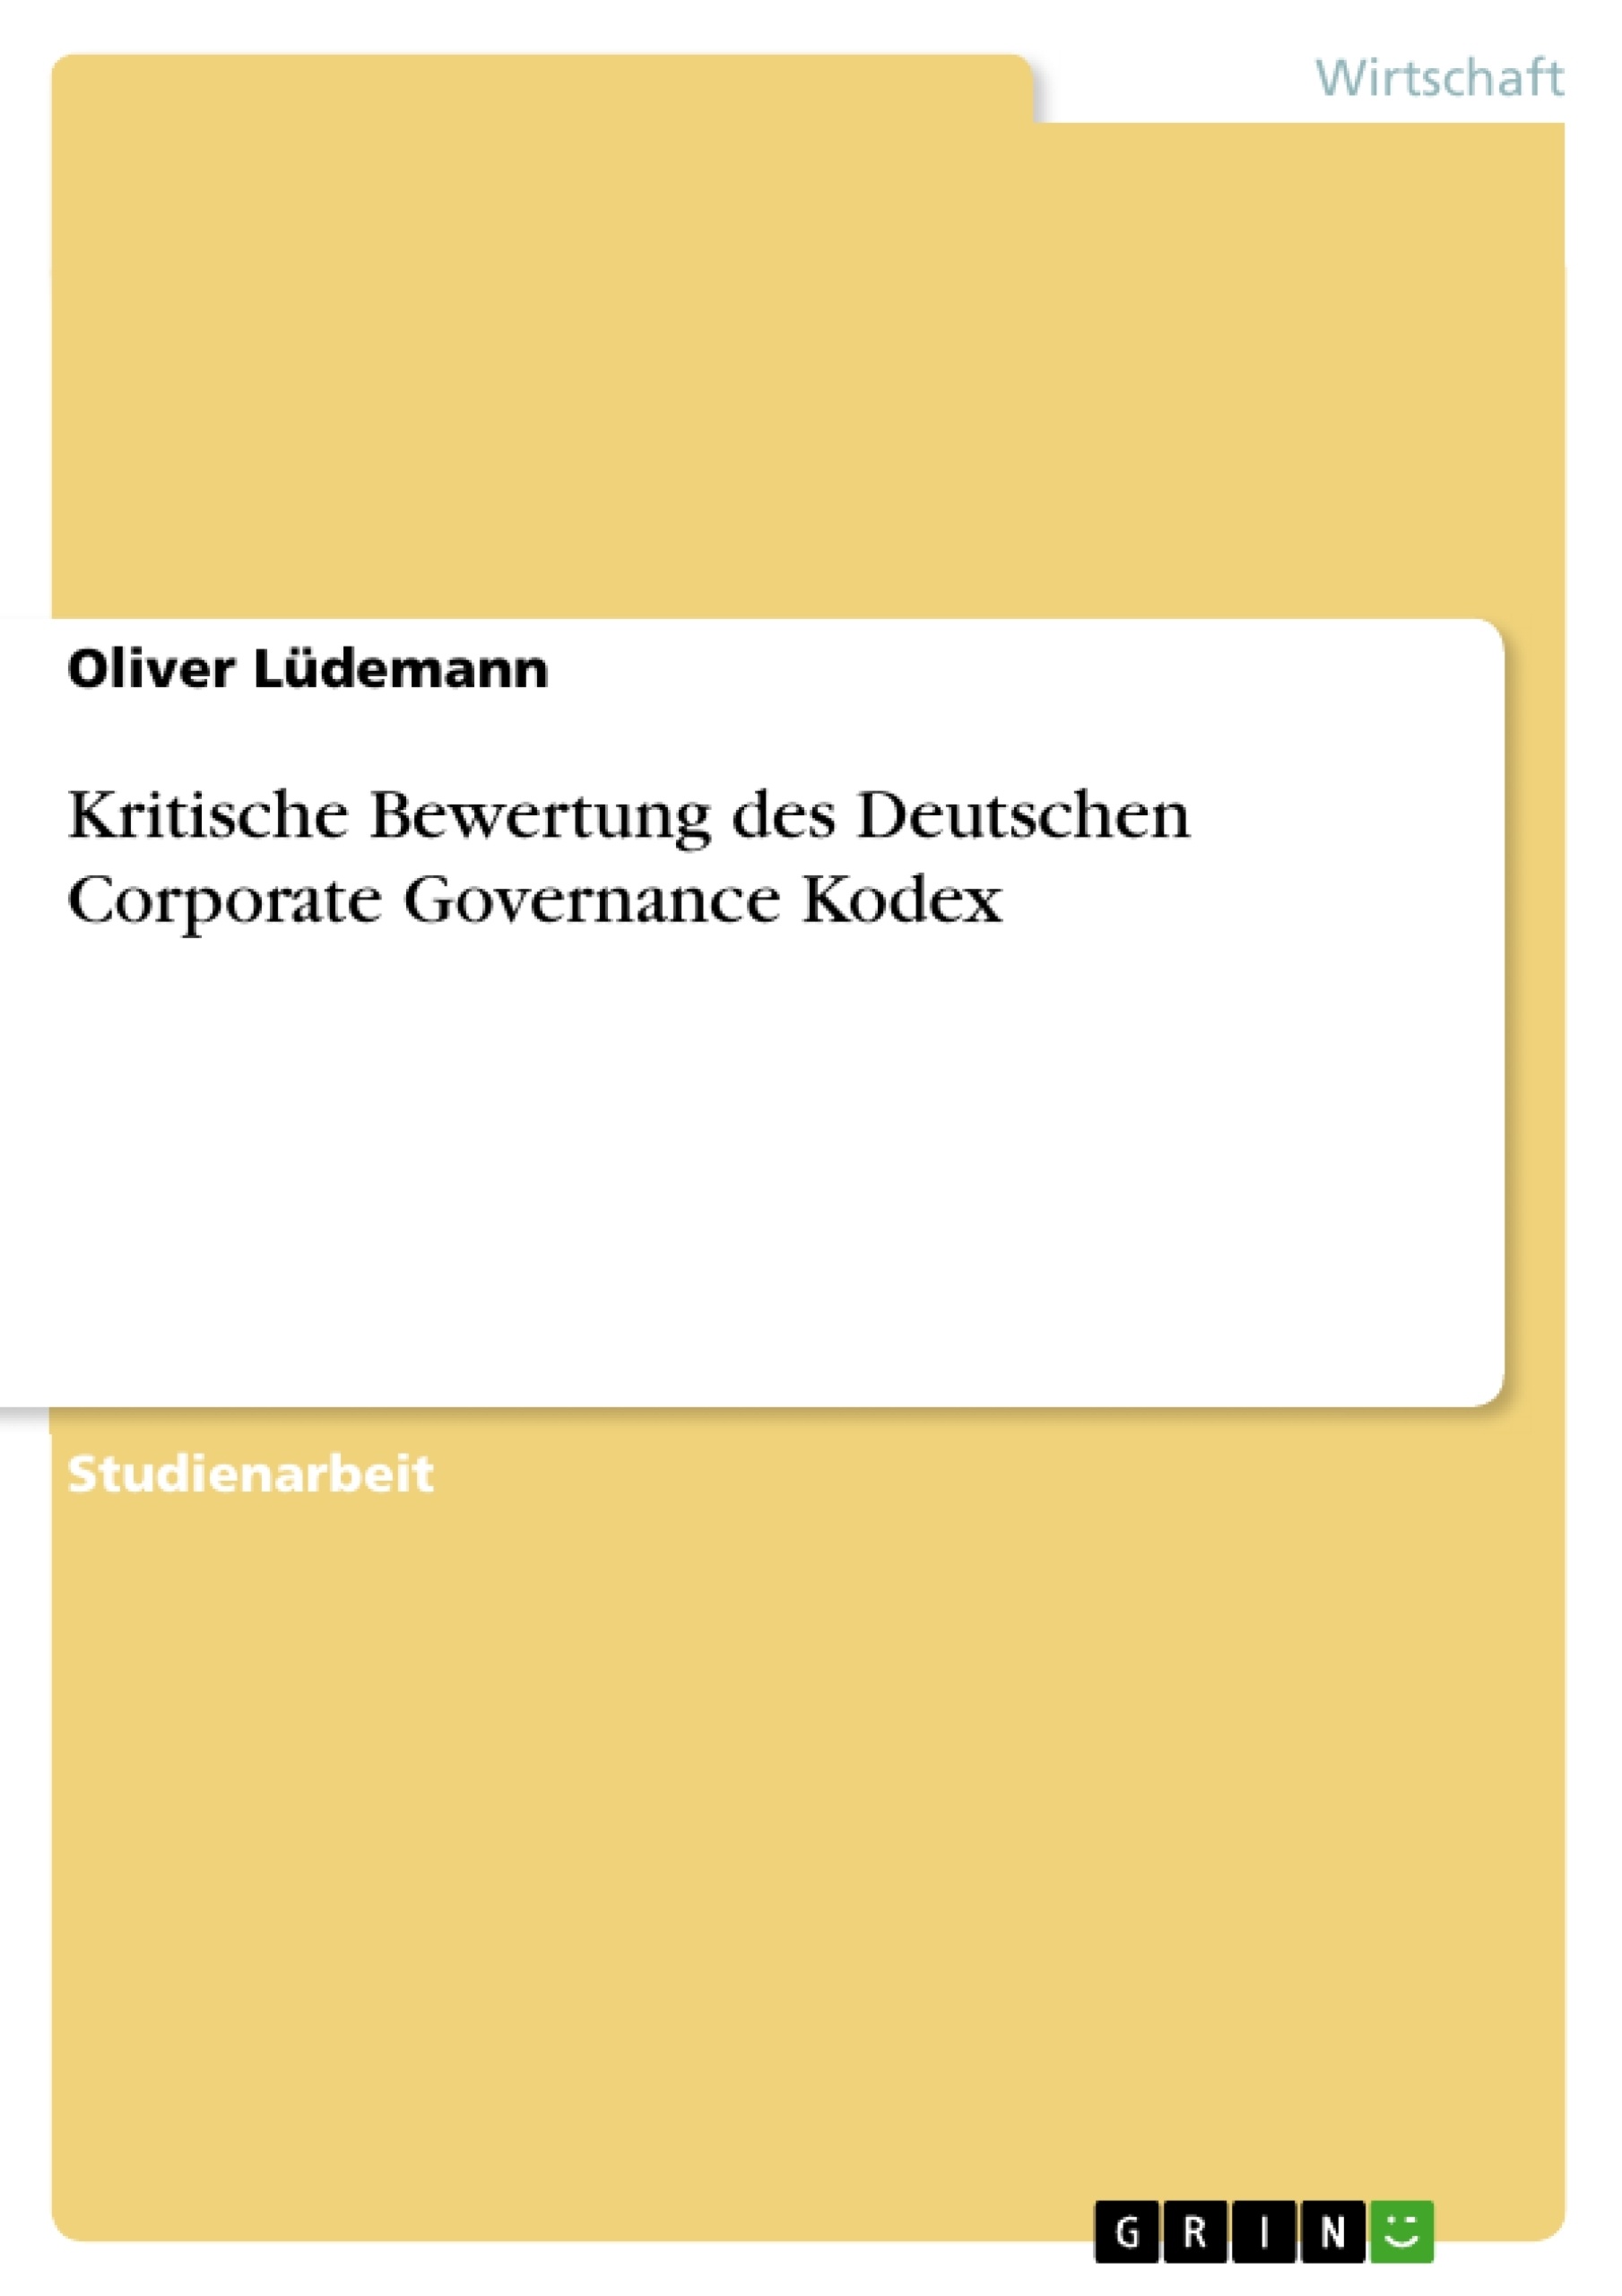 Title: Kritische Bewertung des Deutschen Corporate Governance Kodex